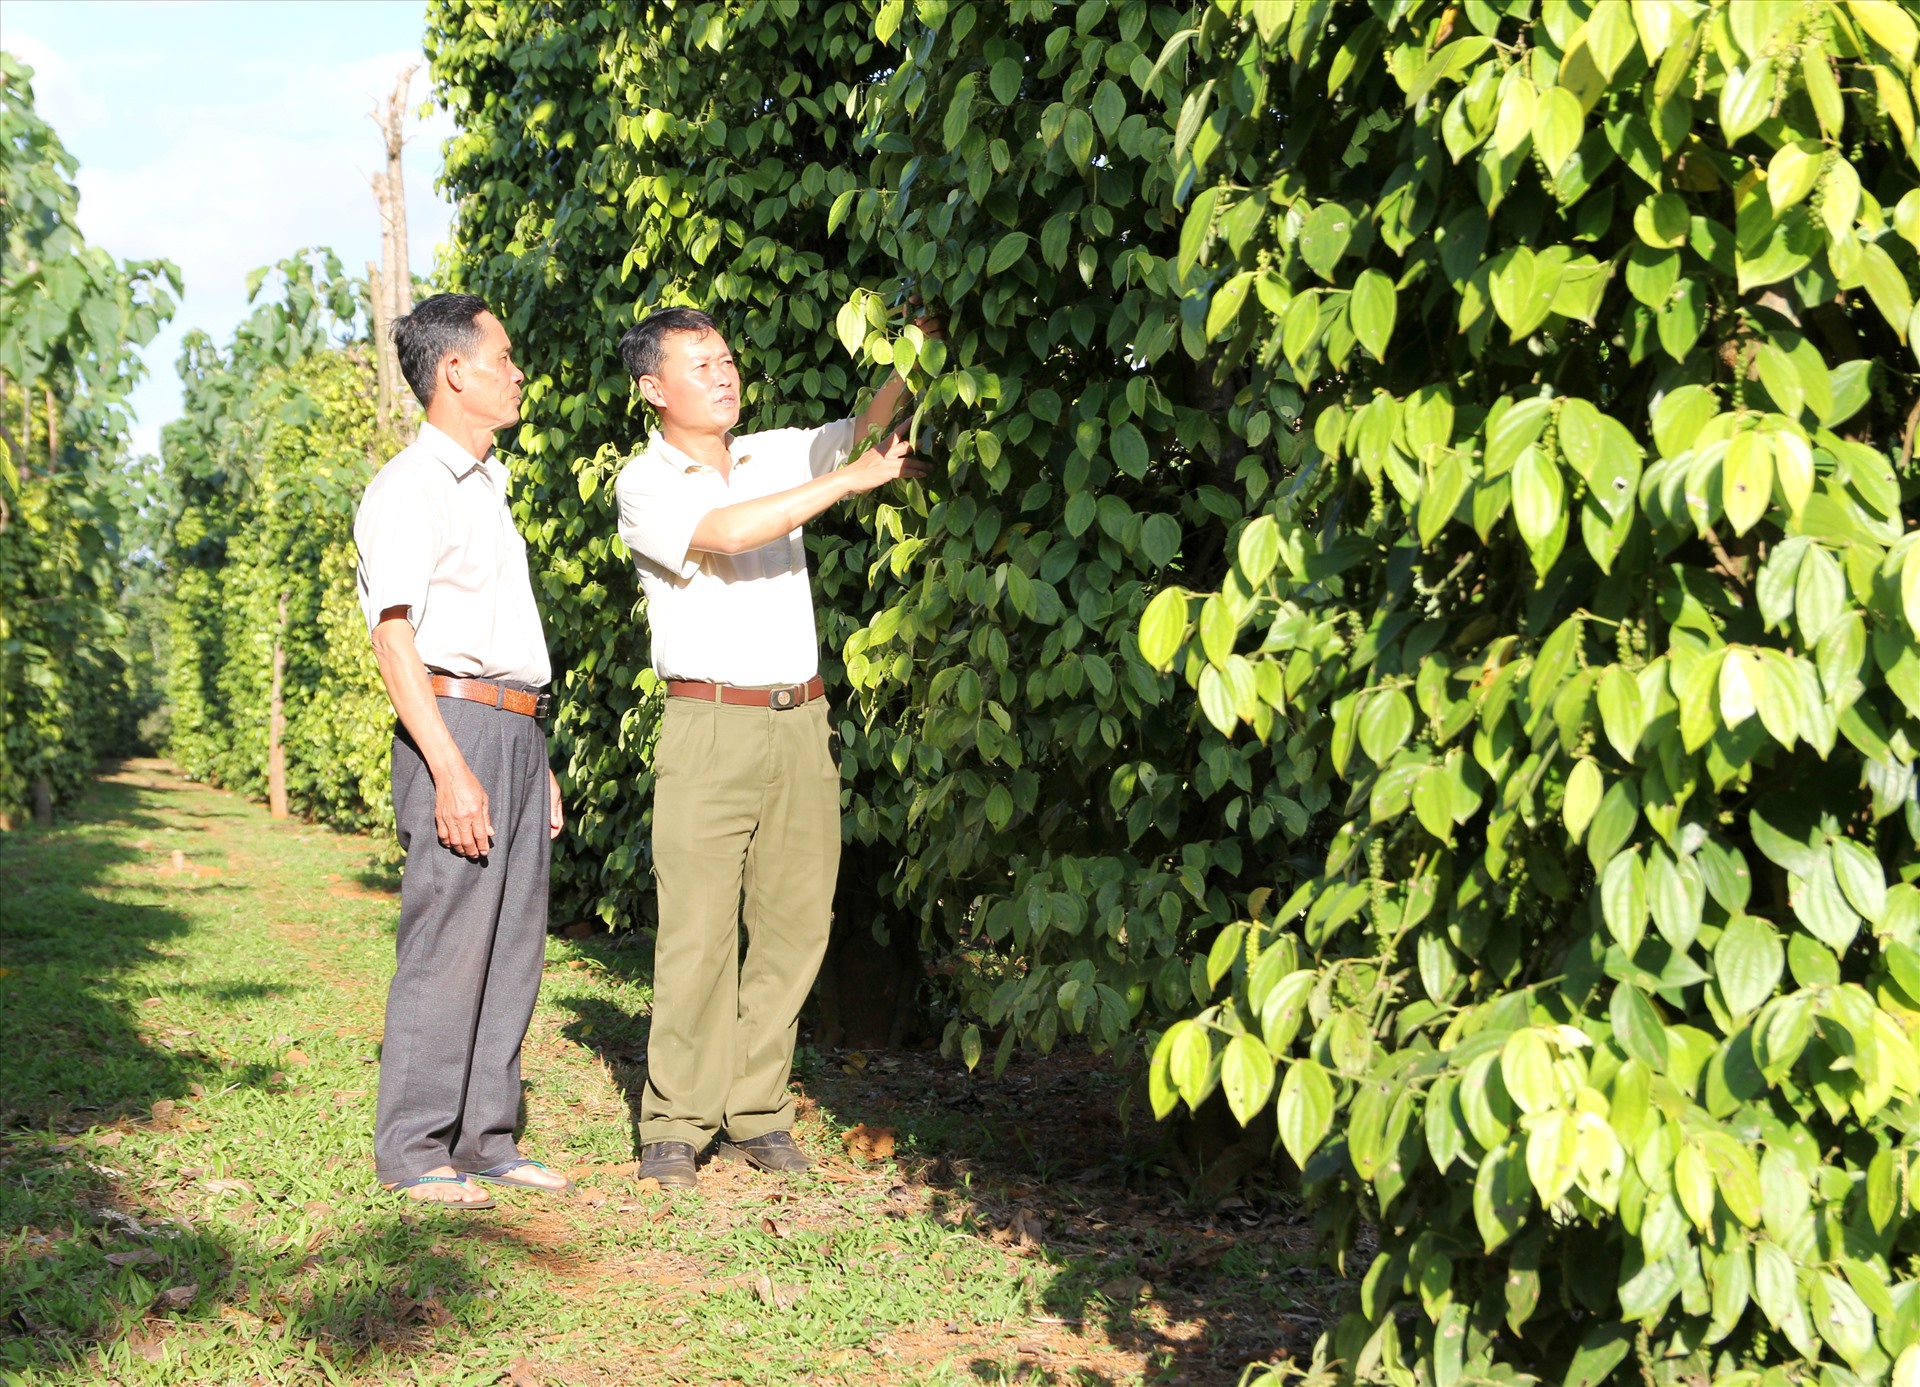 Các mô hình liên kết phát triển sản xuất cà phê, hồ tiêu đang mang lại hiệu quả kinh tế cao cho người nông dân. Ảnh: Phan Tuấn